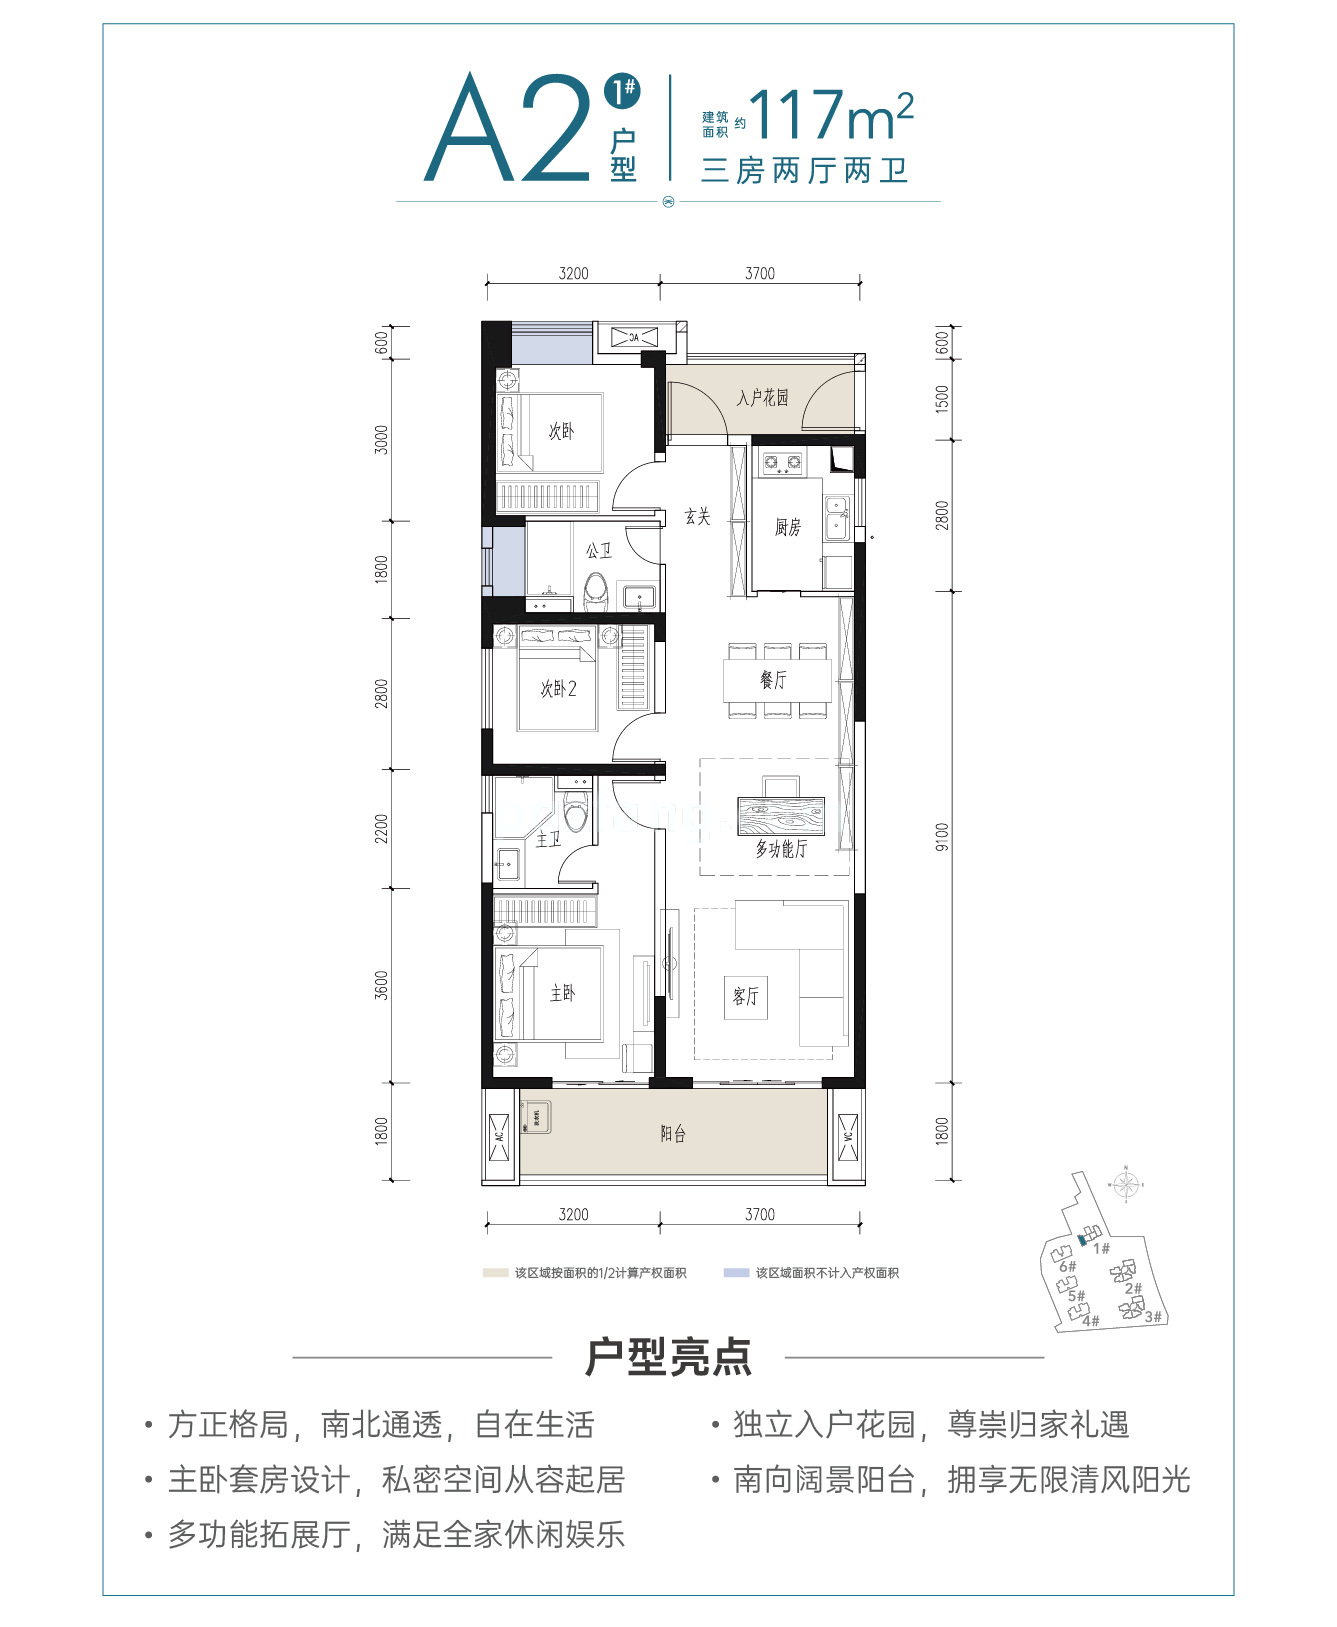 中国铁建·江语天著 高层 A2户型建筑面积117㎡3房2厅2卫